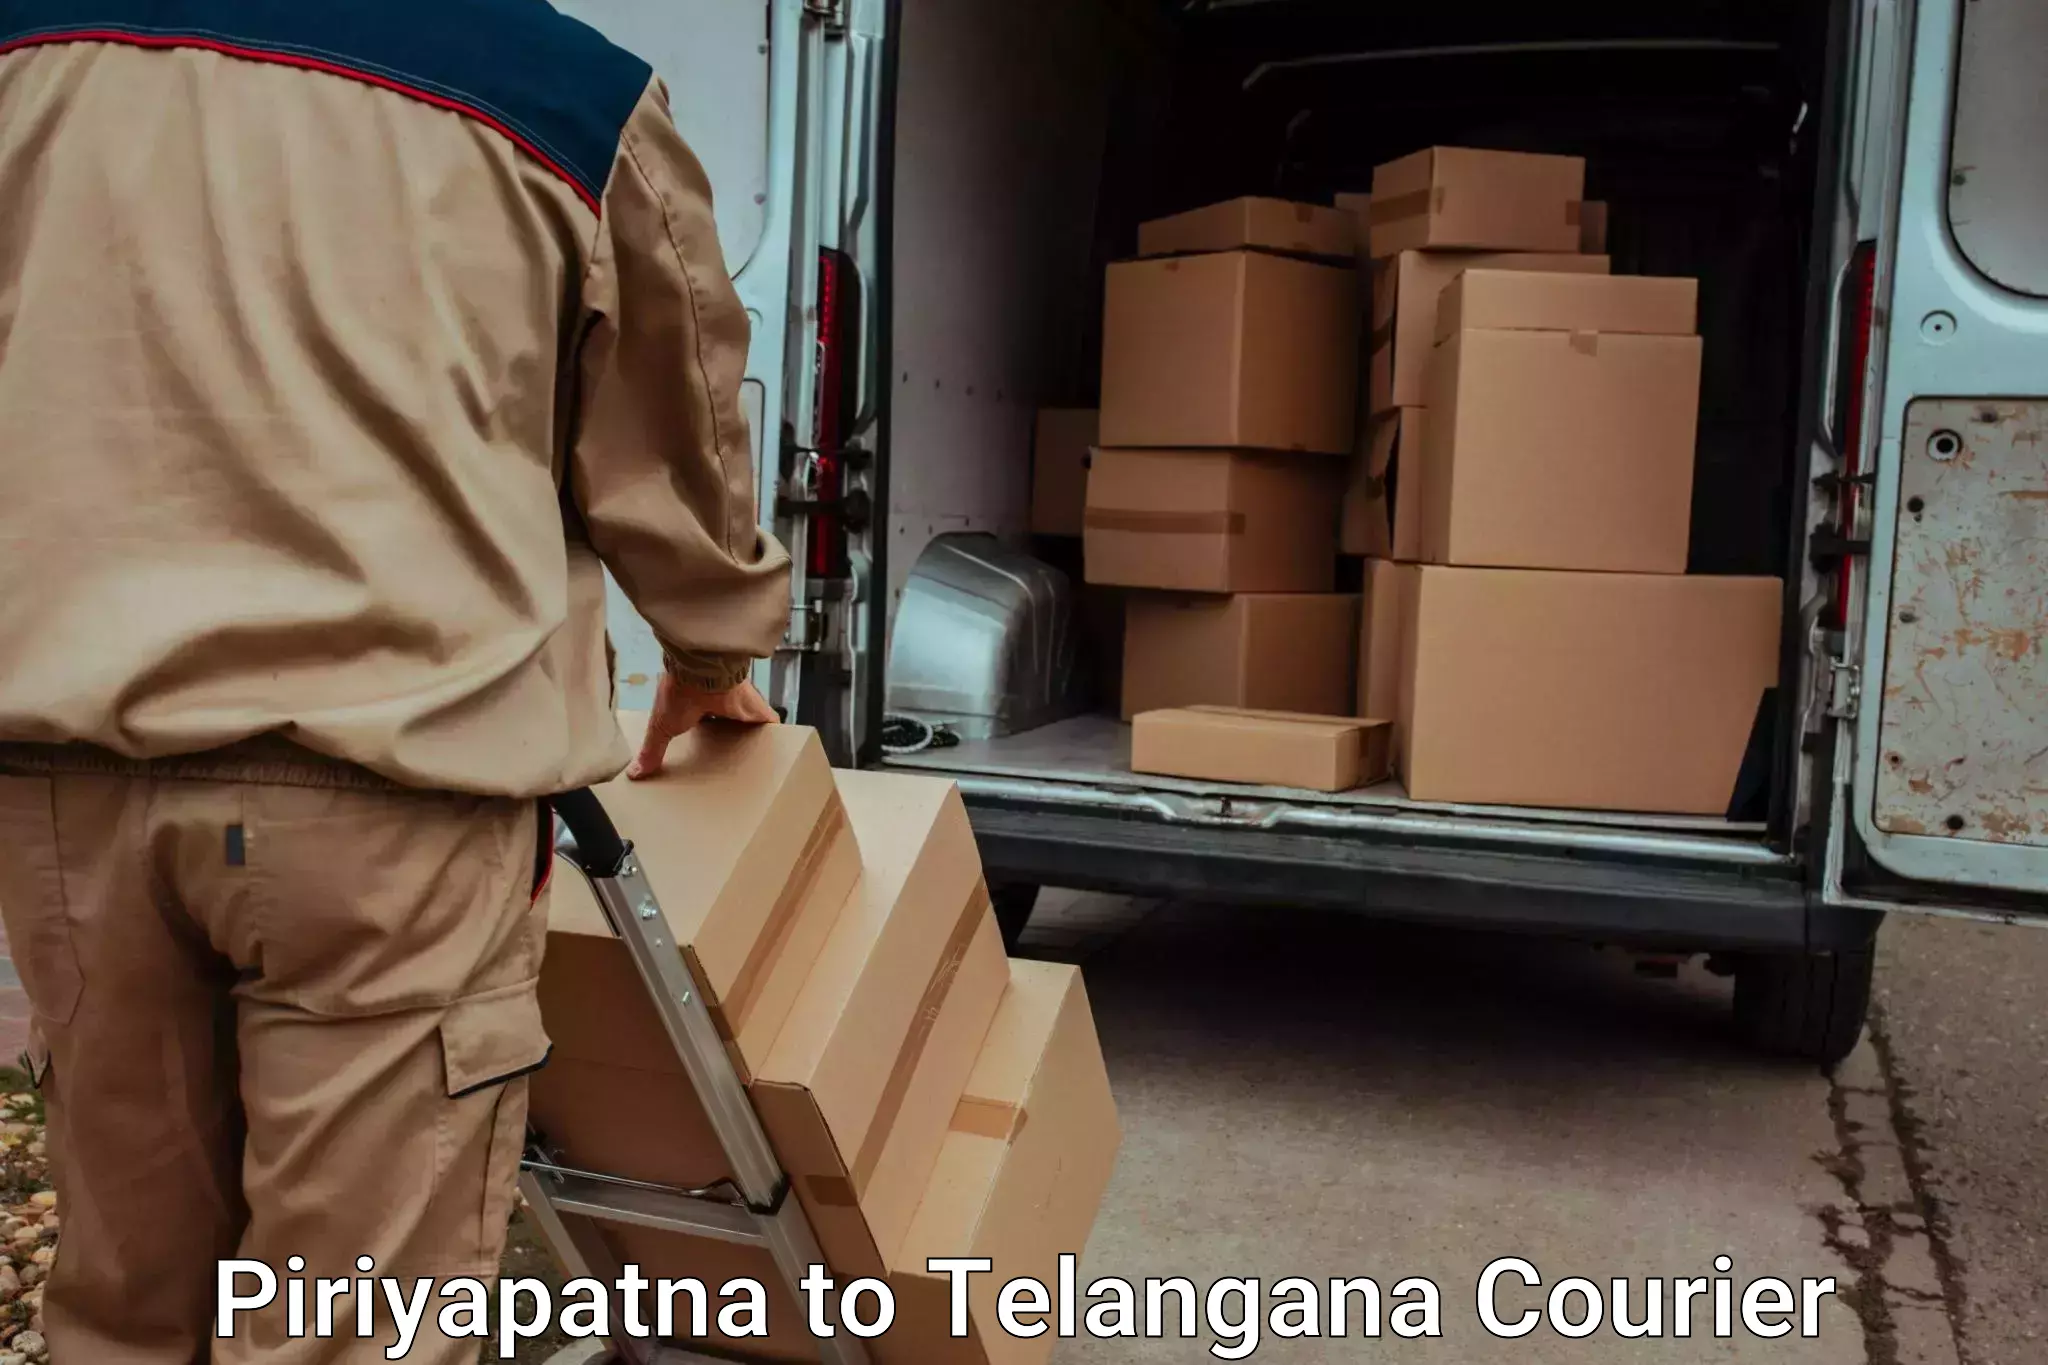 Luggage delivery news Piriyapatna to Makthal